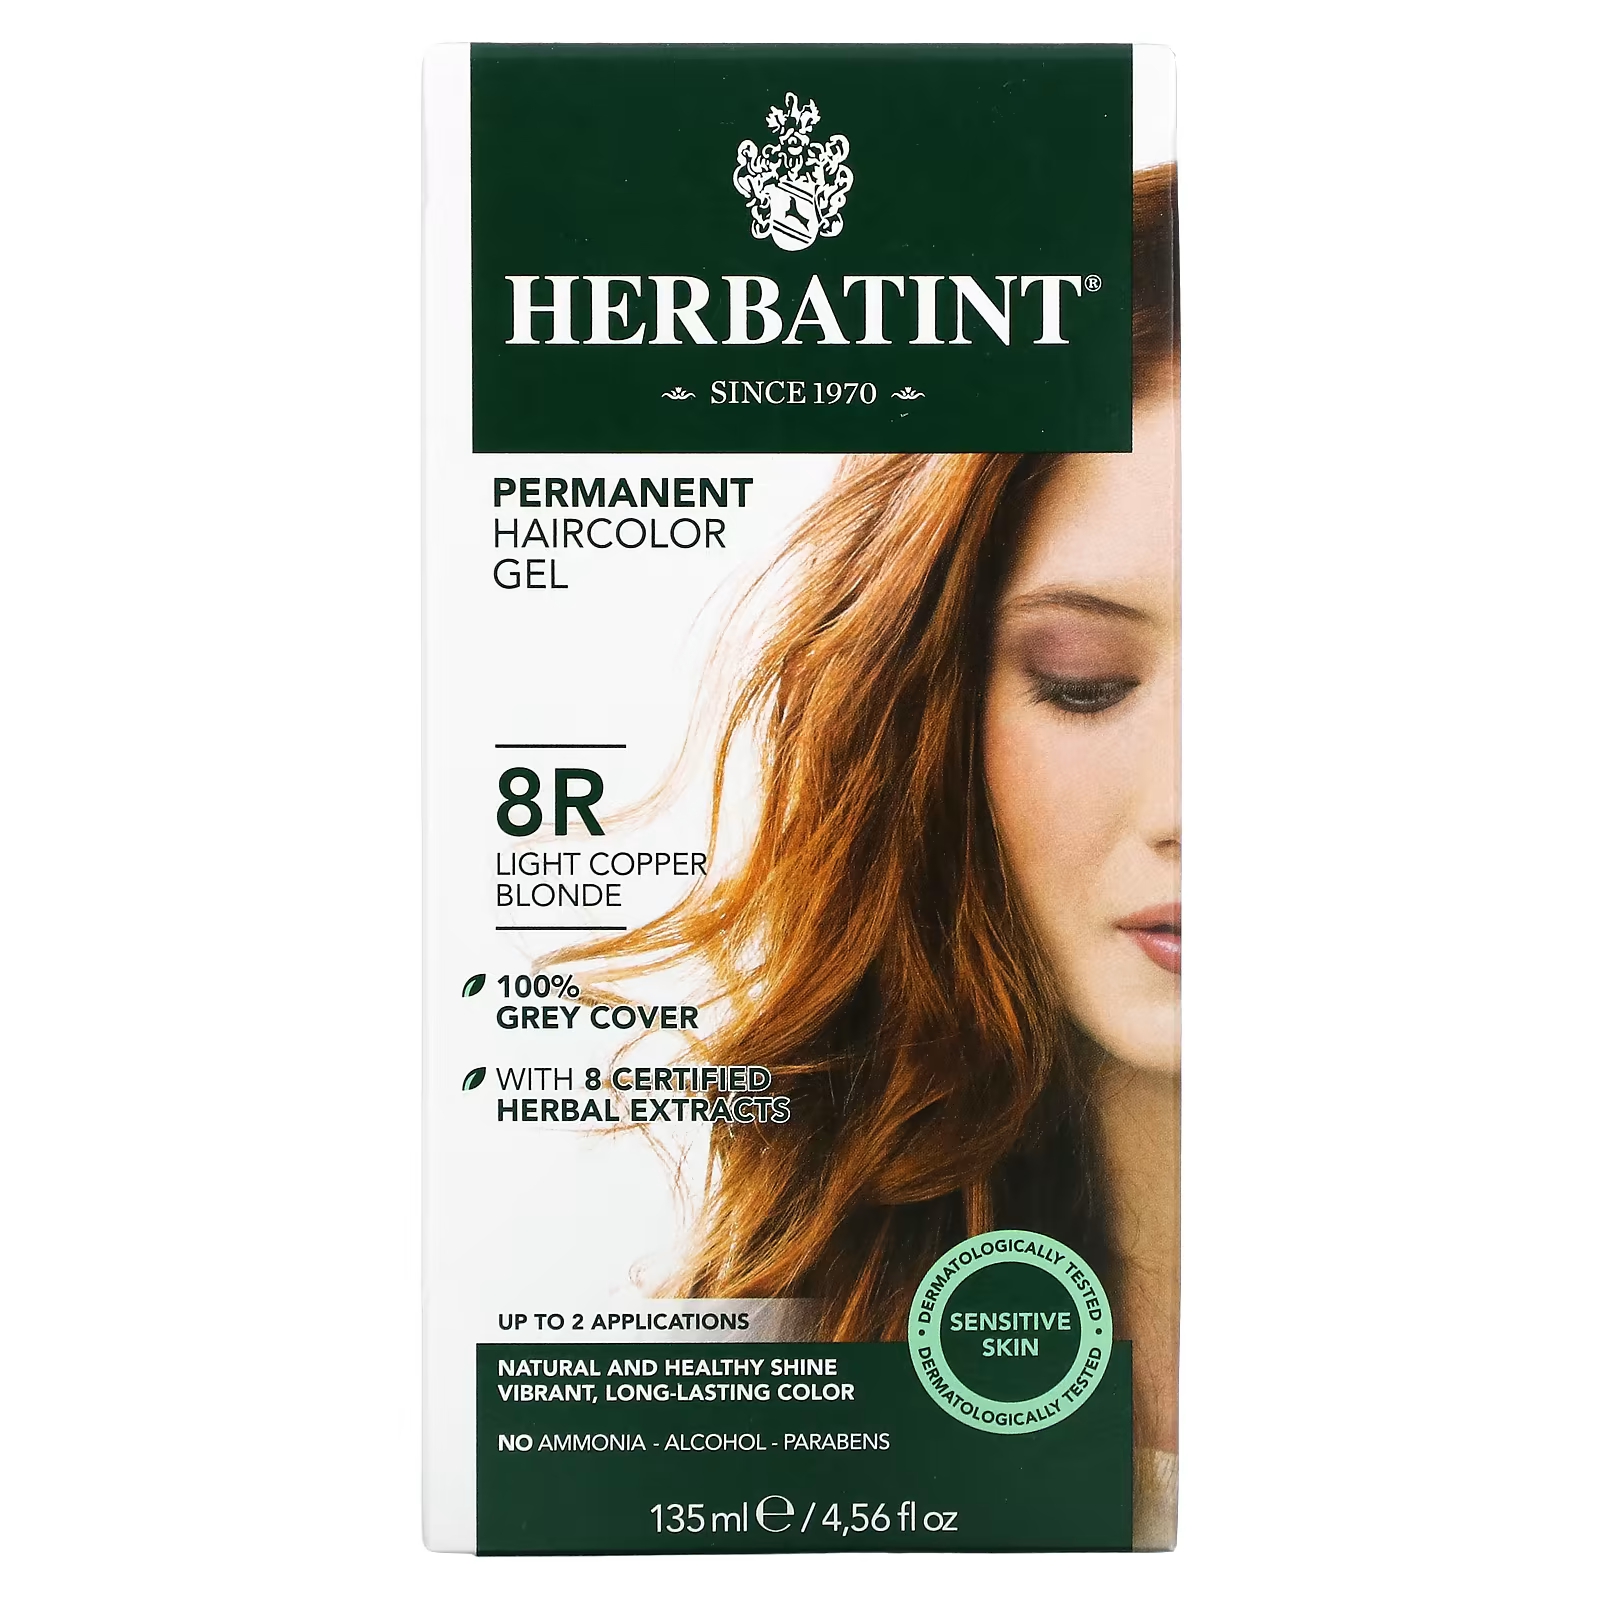 Перманентная гель-краска для волос Herbatint 8R светло-медный блондин, 135 мл herbatint стойкая гель краска для волос 8r светлый медный блондин 135 мл 4 56 жидк унции